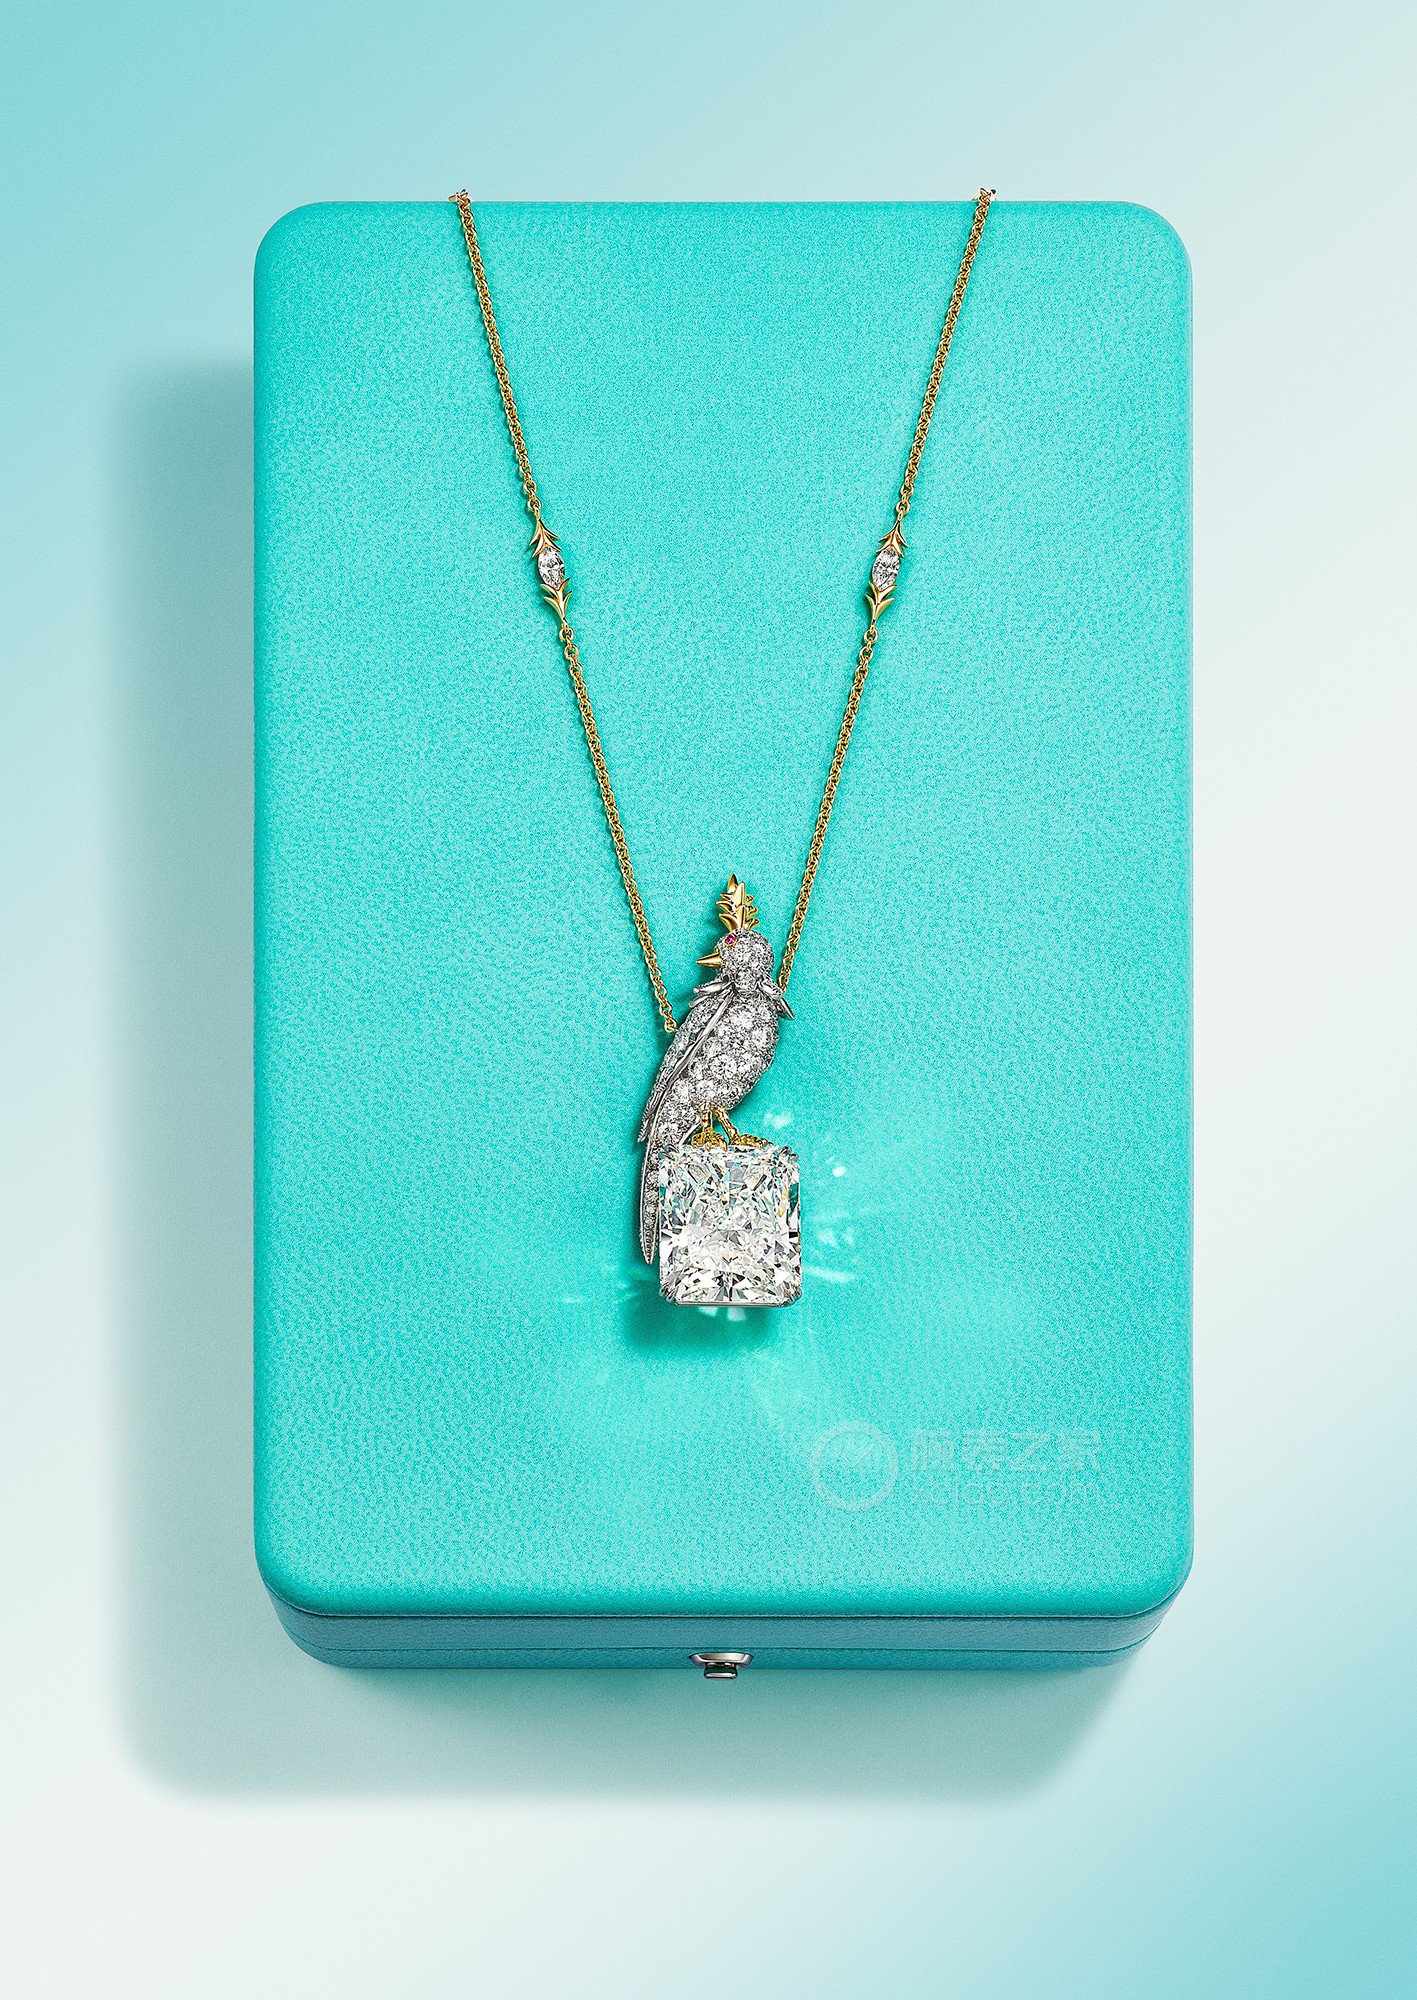 蒂芙尼史隆伯杰系列铂金及18K黄金镶嵌一颗重逾20克拉的钻石，粉色蓝宝石及钻石“石上鸟”项链项链